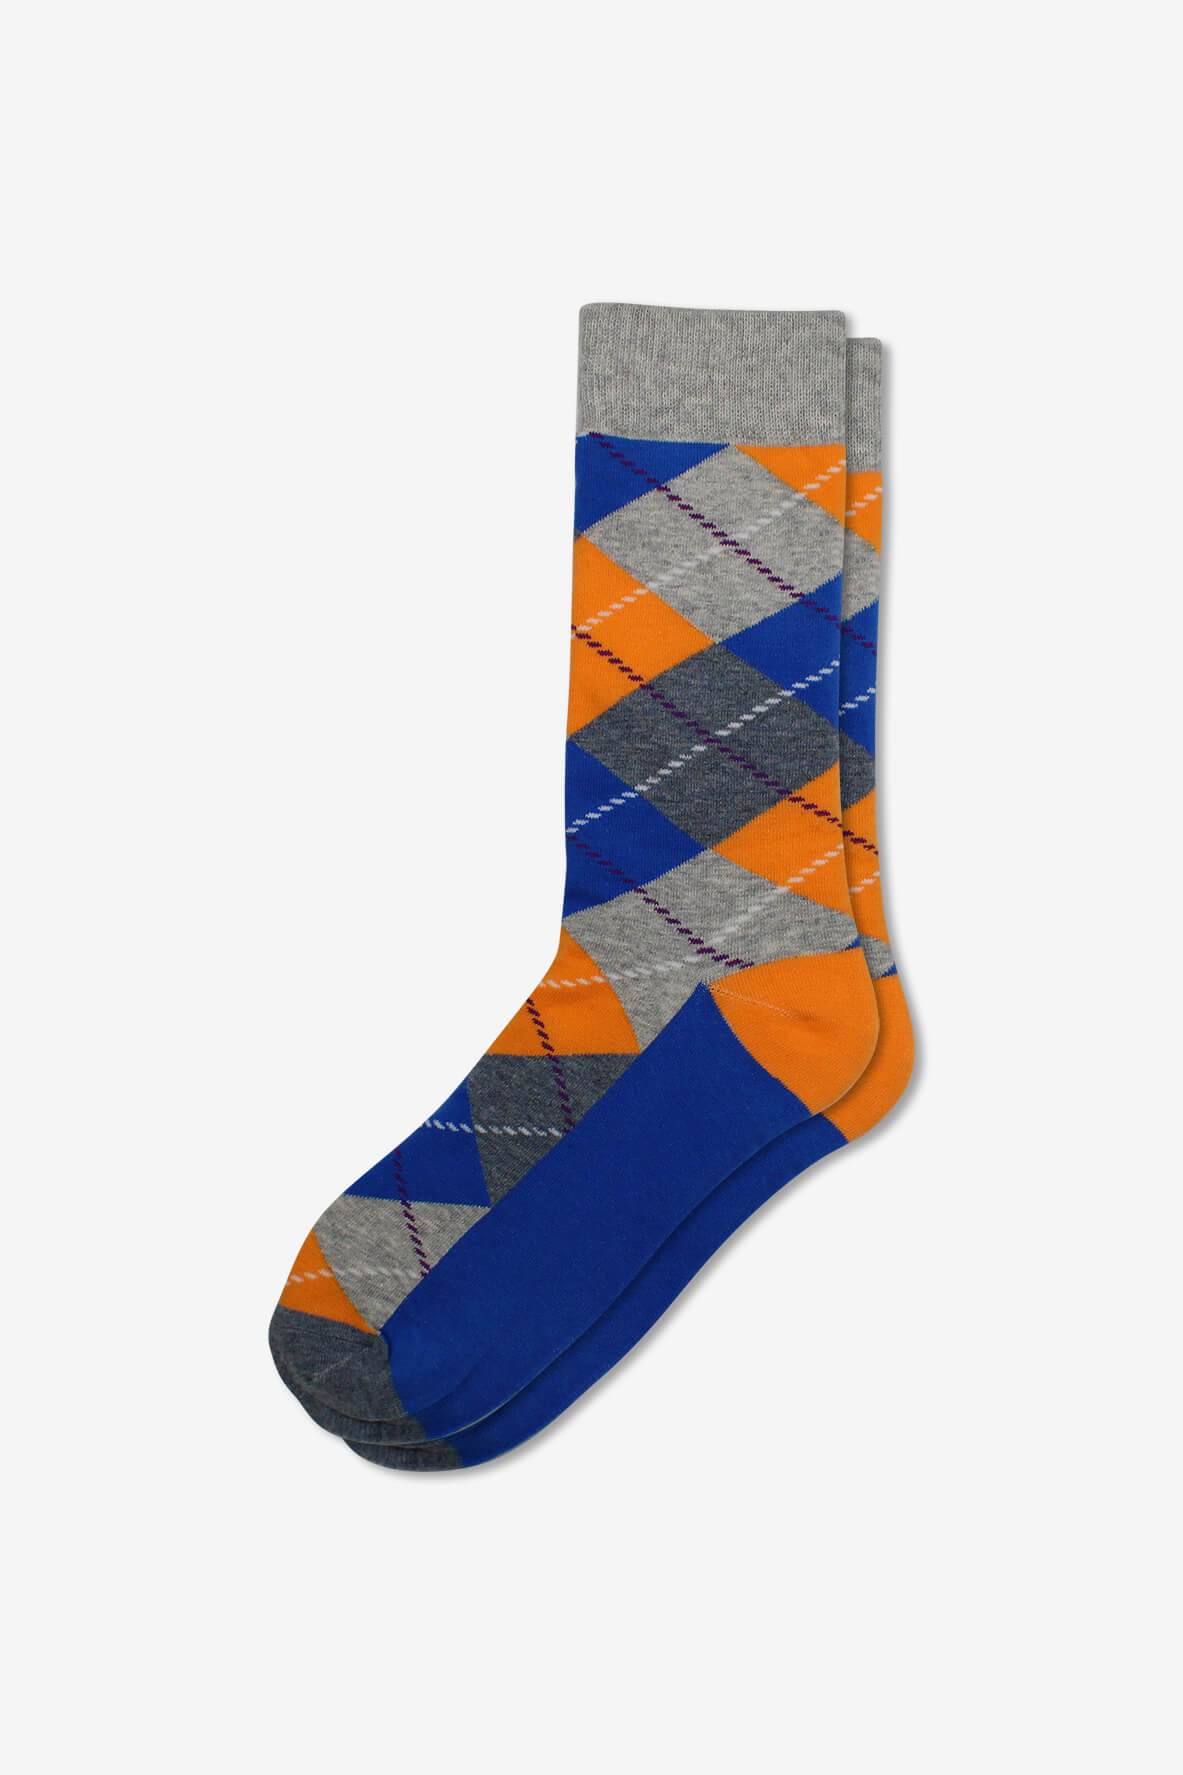 Socks IMG_5242, socks, GoTie